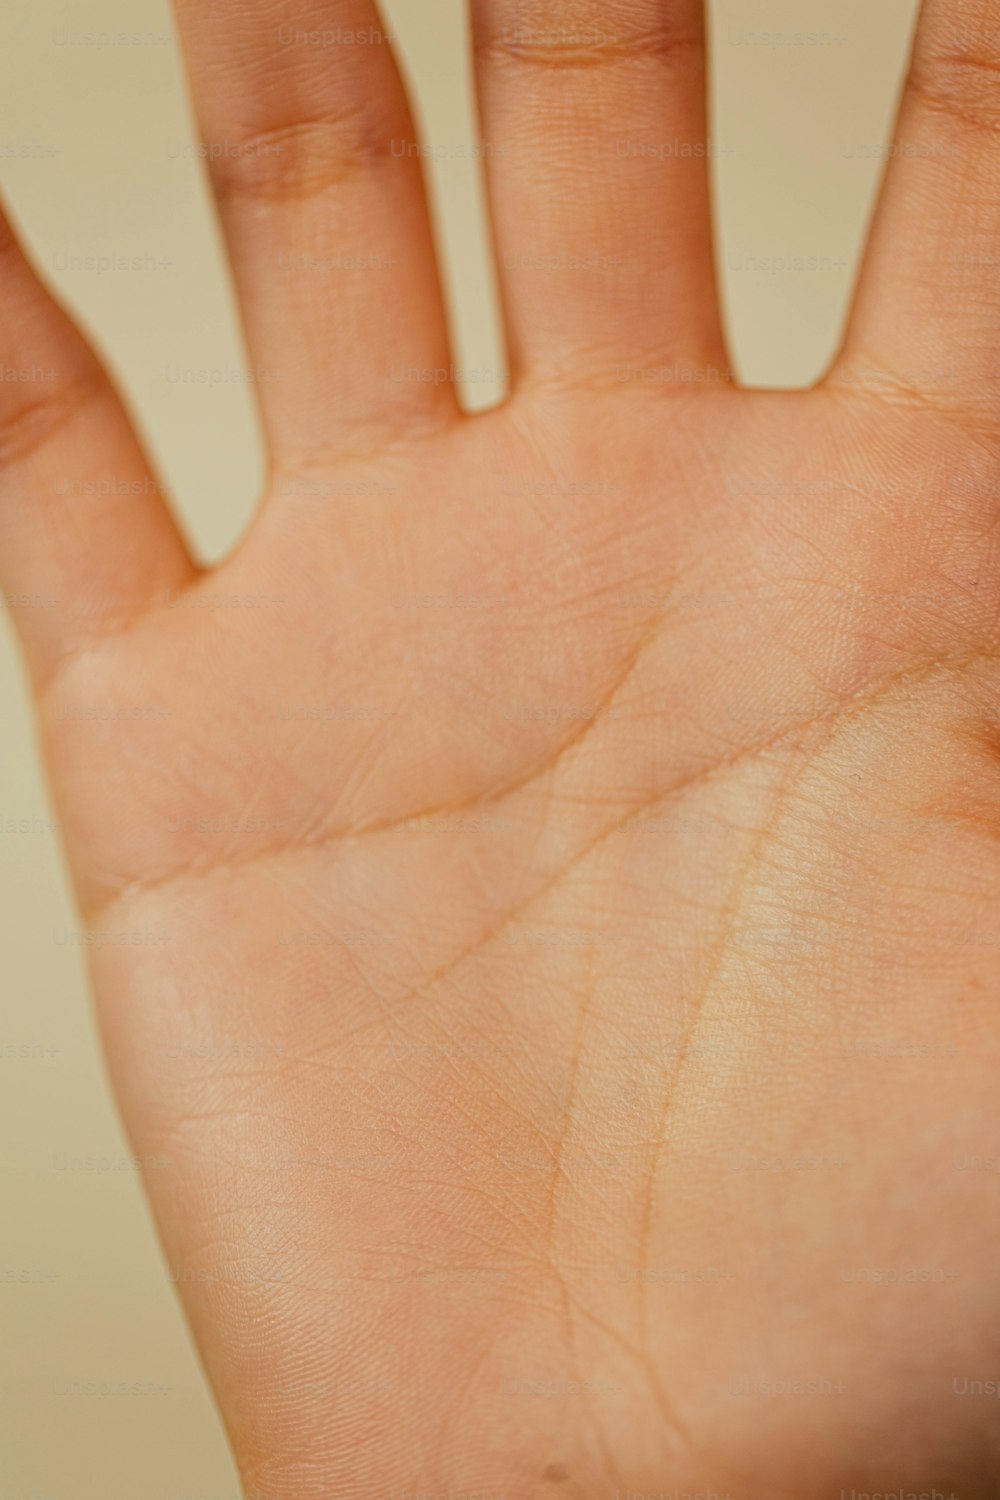 um close up da mão de uma pessoa segurando um telefone celular